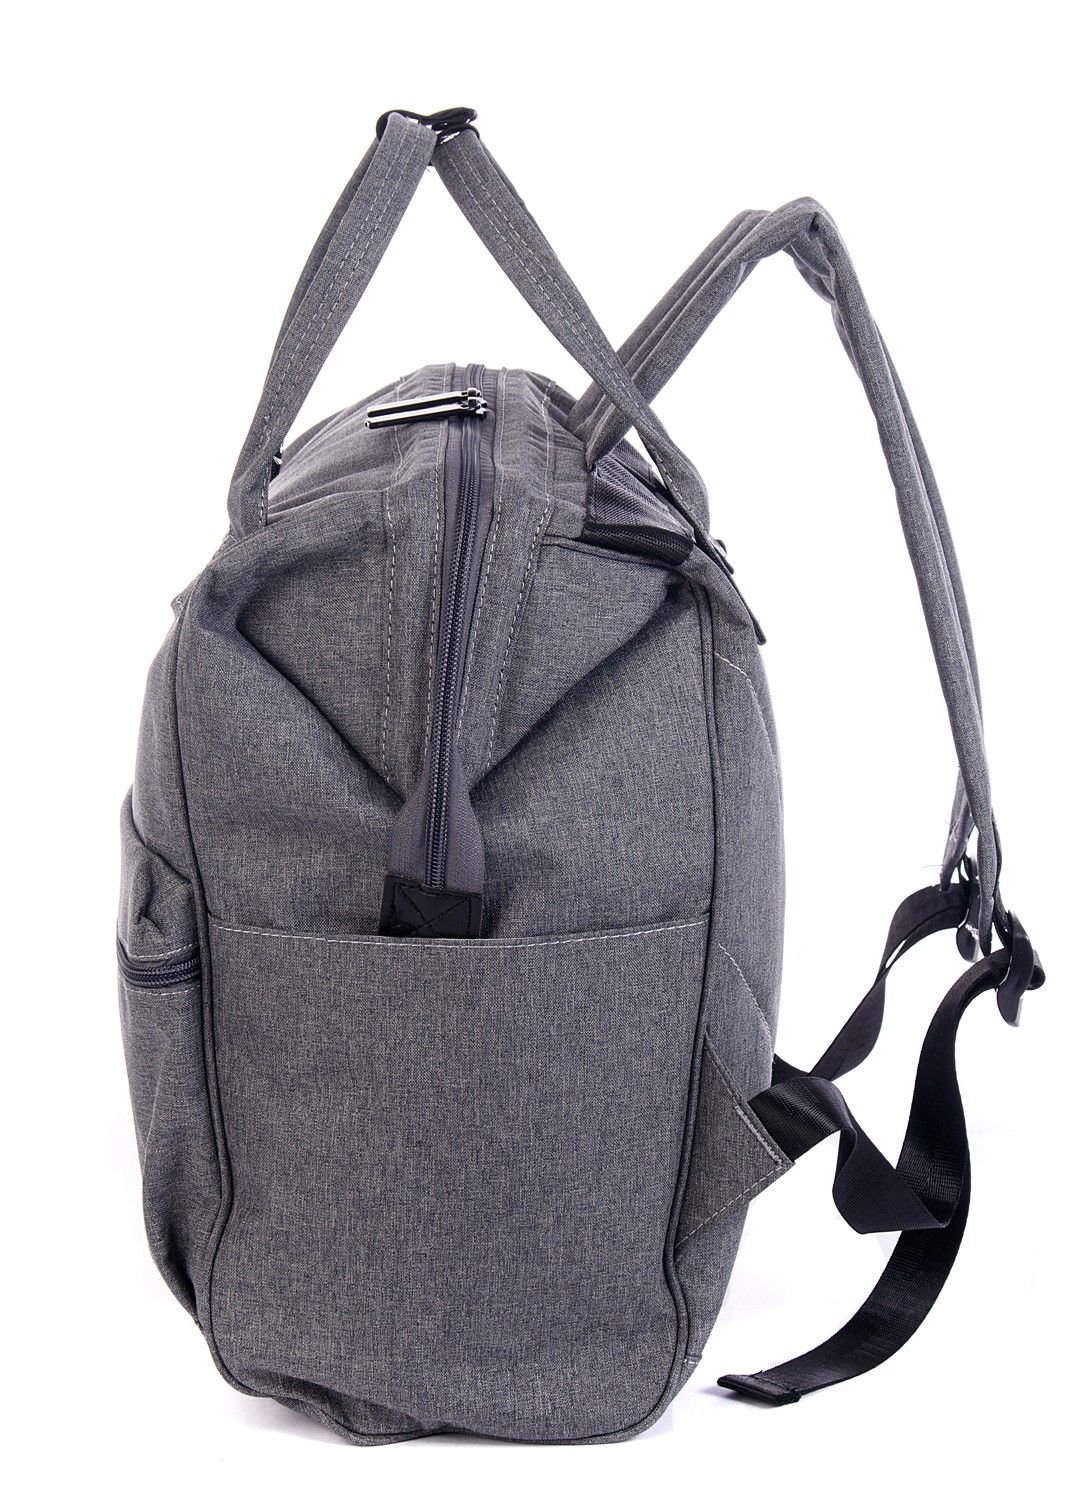 Рюкзак женский городской, серый однотонный, со стандартными лямками, объем 18 л